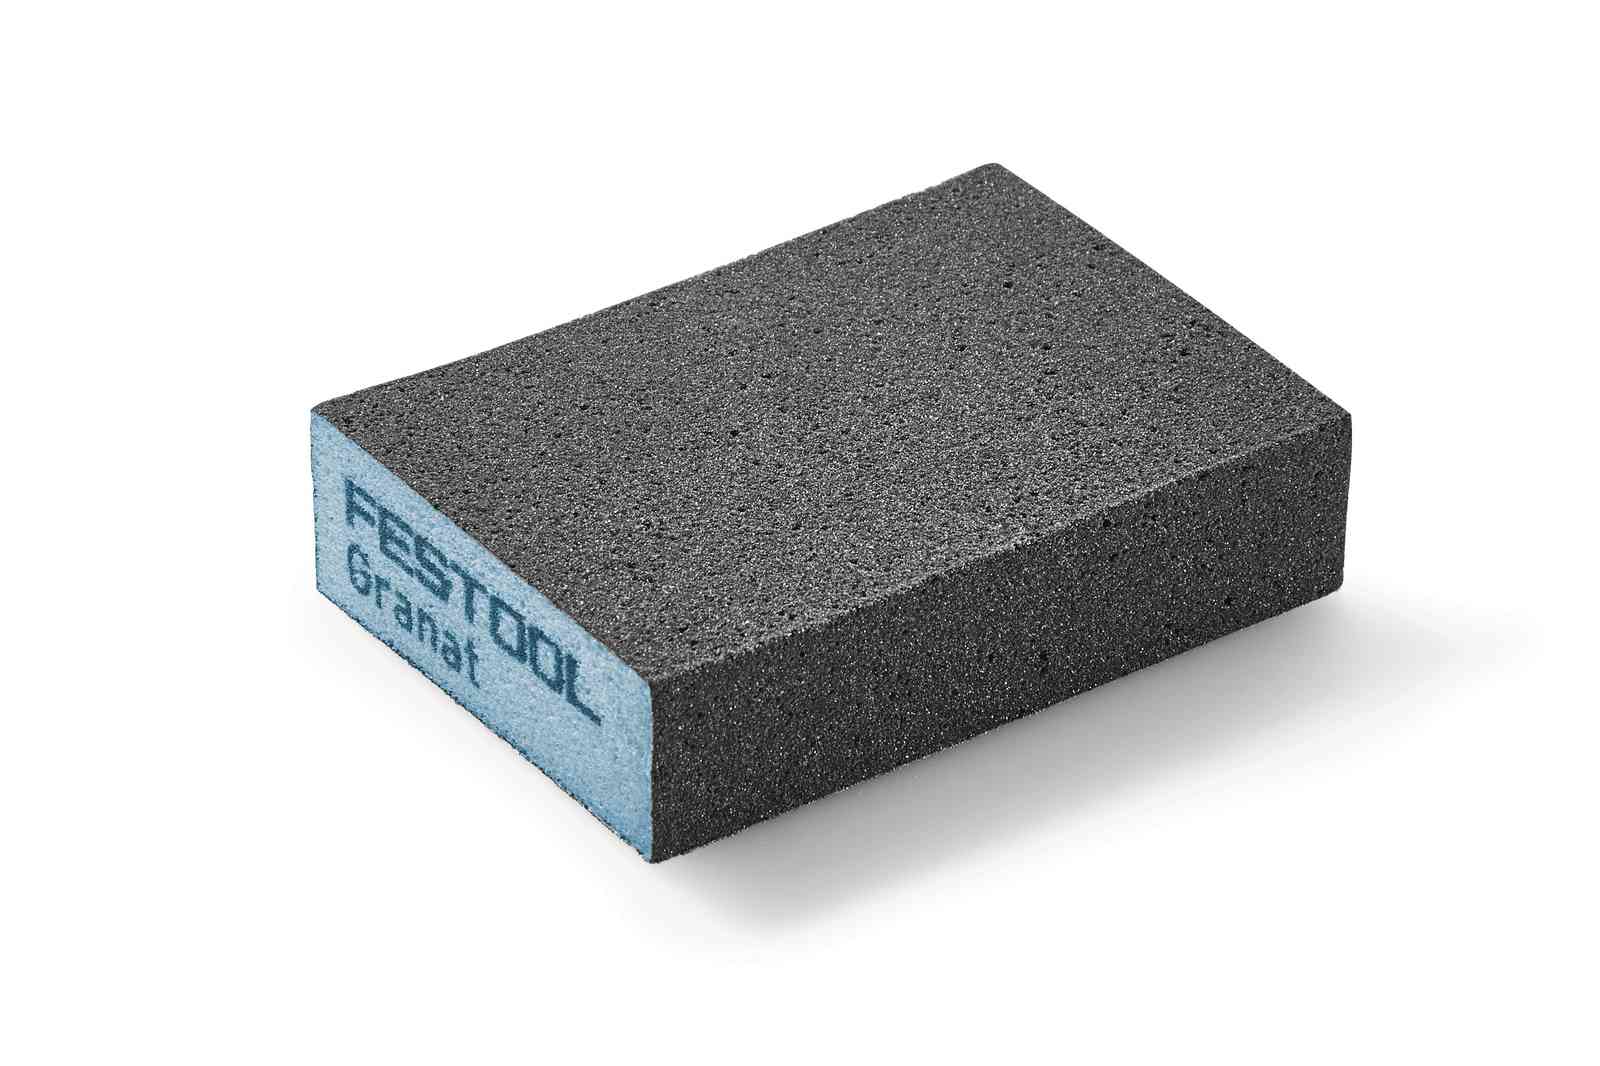 Festool Sanding block Granat 69x98x26 GR/6 ( Select Grit )